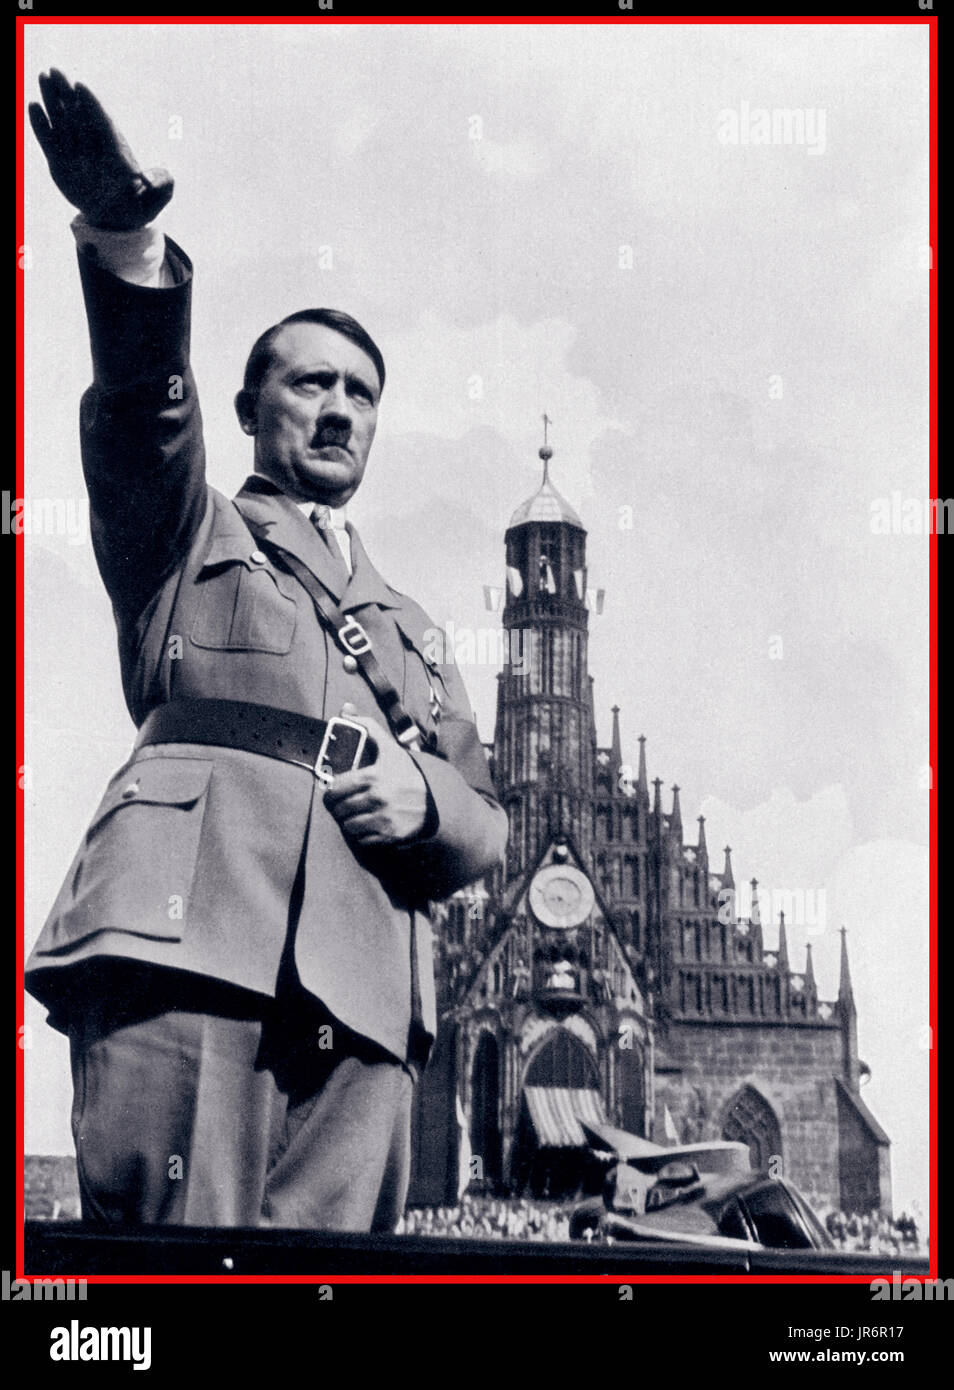 Führer Adolf Hitler en uniforme militaire nazie donne Heil Hitler salute de sa voiture alors qu'à un rassemblement du parti nazi dans les années 1930, Adolf Hitler salue foule depuis sa voiture ouverte au défilé Reichsparteitag Nürnberg Allemagne Banque D'Images